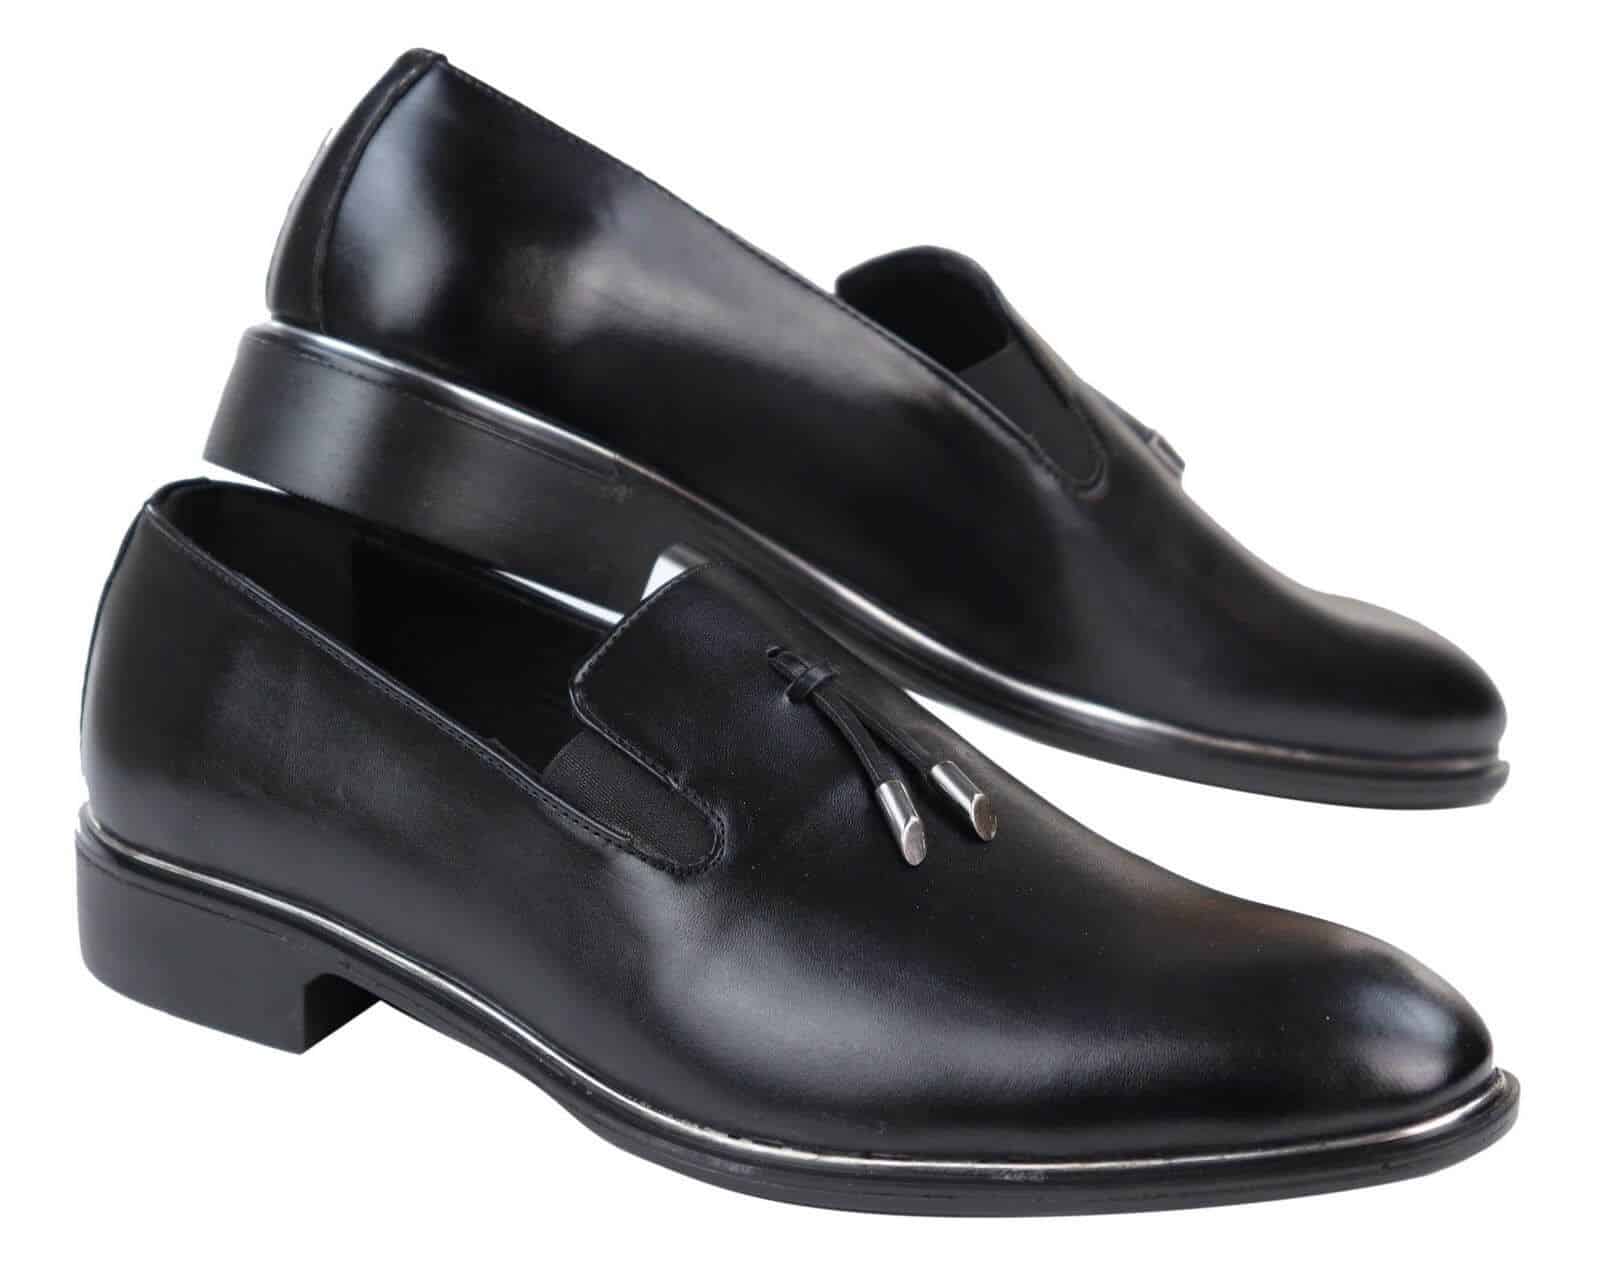 Mens Slip On Tassel Shoes with Metal Trim | Happy Gentleman